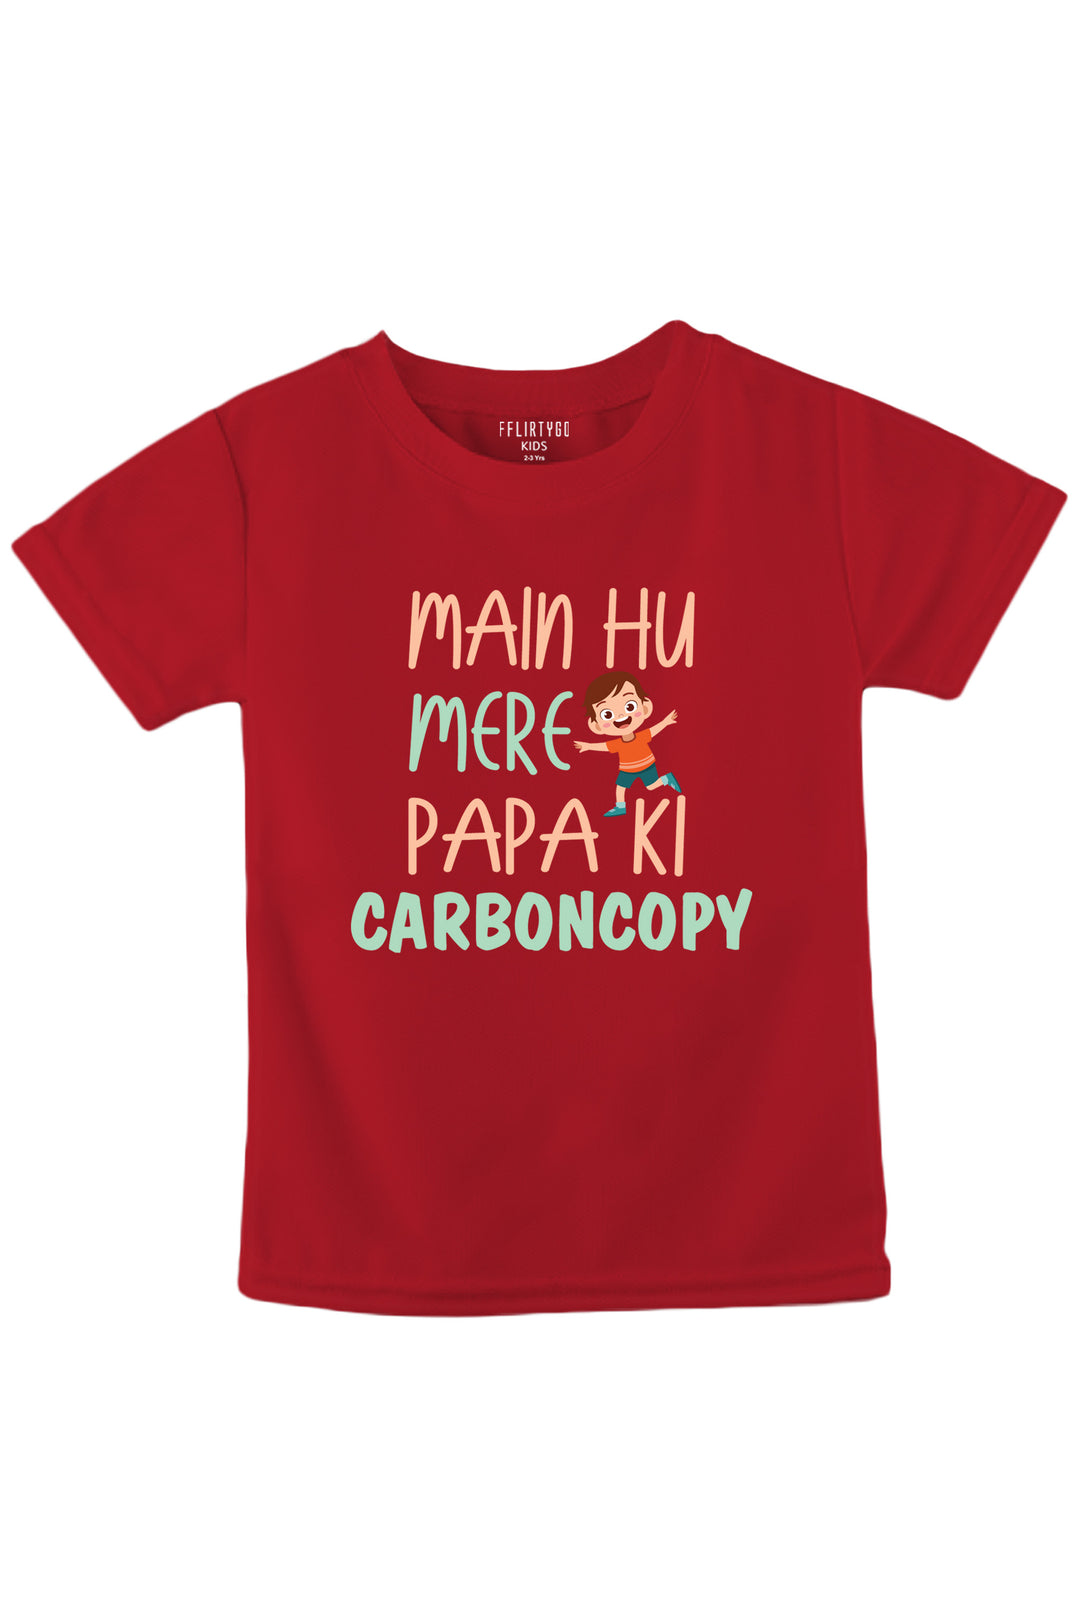 Main Hun Mere Papa Ki Carbon Copy Boy